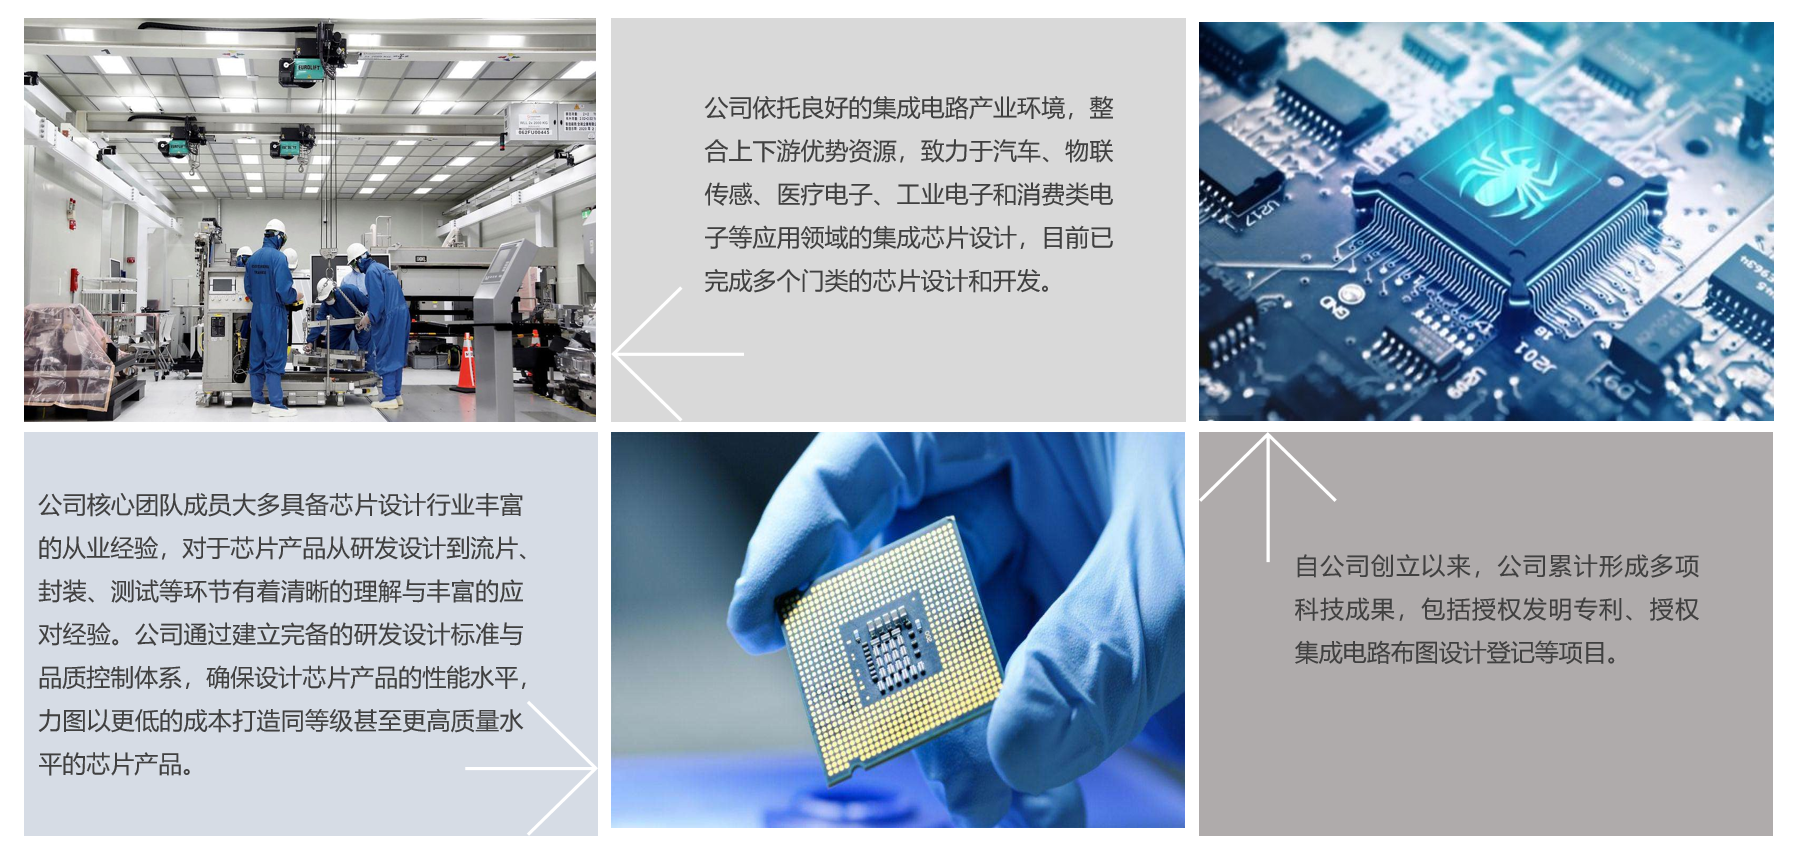 华为要自造芯片？消息称华为将在上海建芯片厂